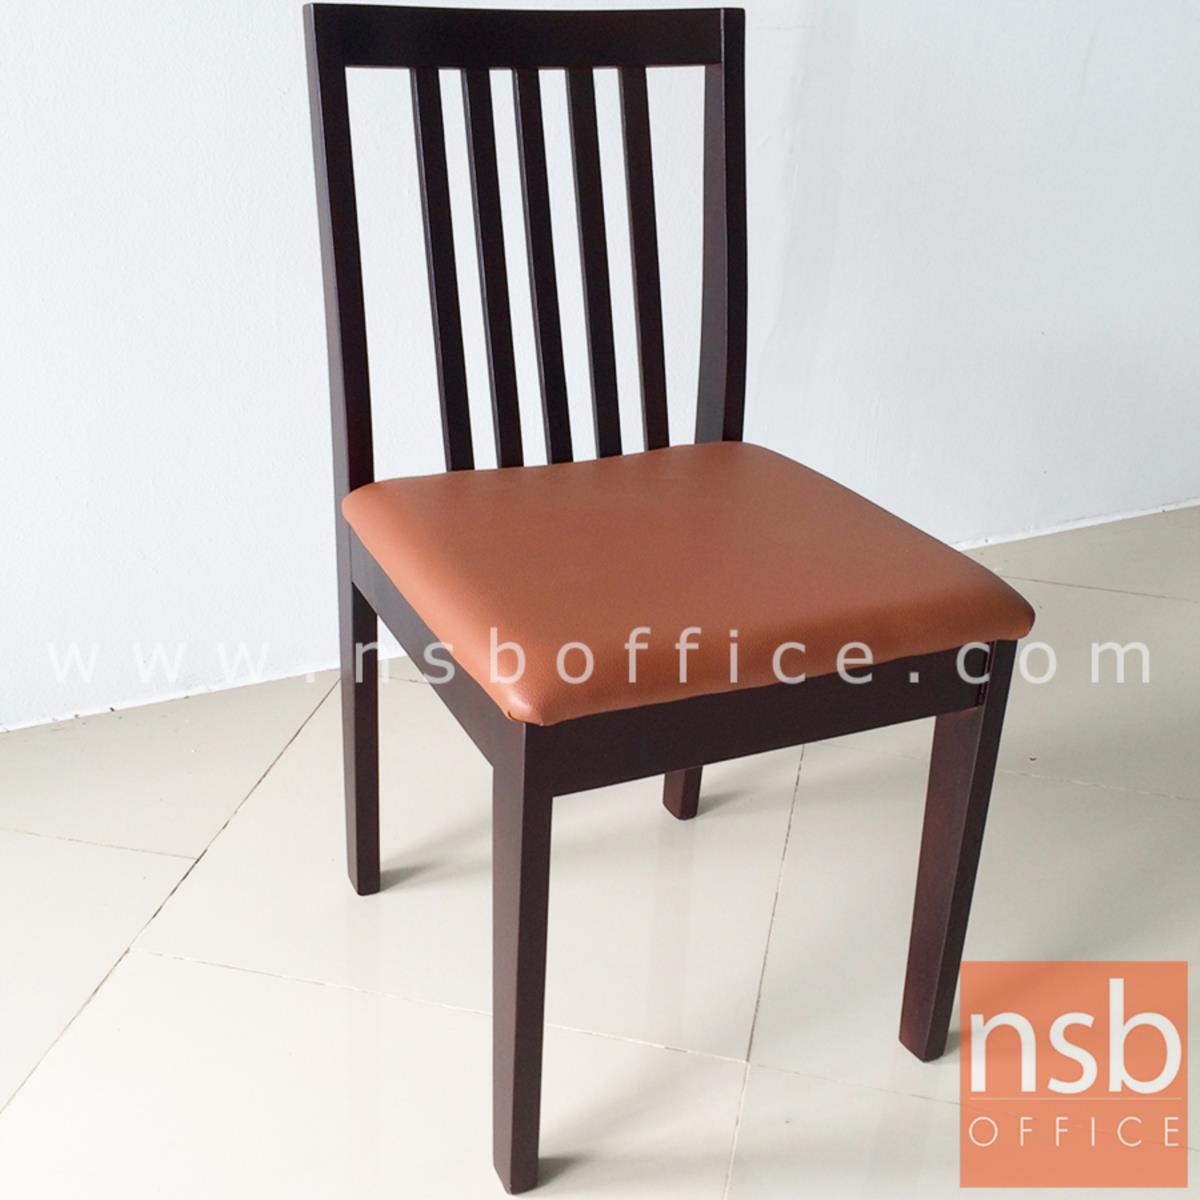 เก้าอี้ไม้ที่นั่งหุ้มหนังเทียม รุ่น Tanzania (แทนซาเนีย)  ขนาด 46W cm. ขาไม้